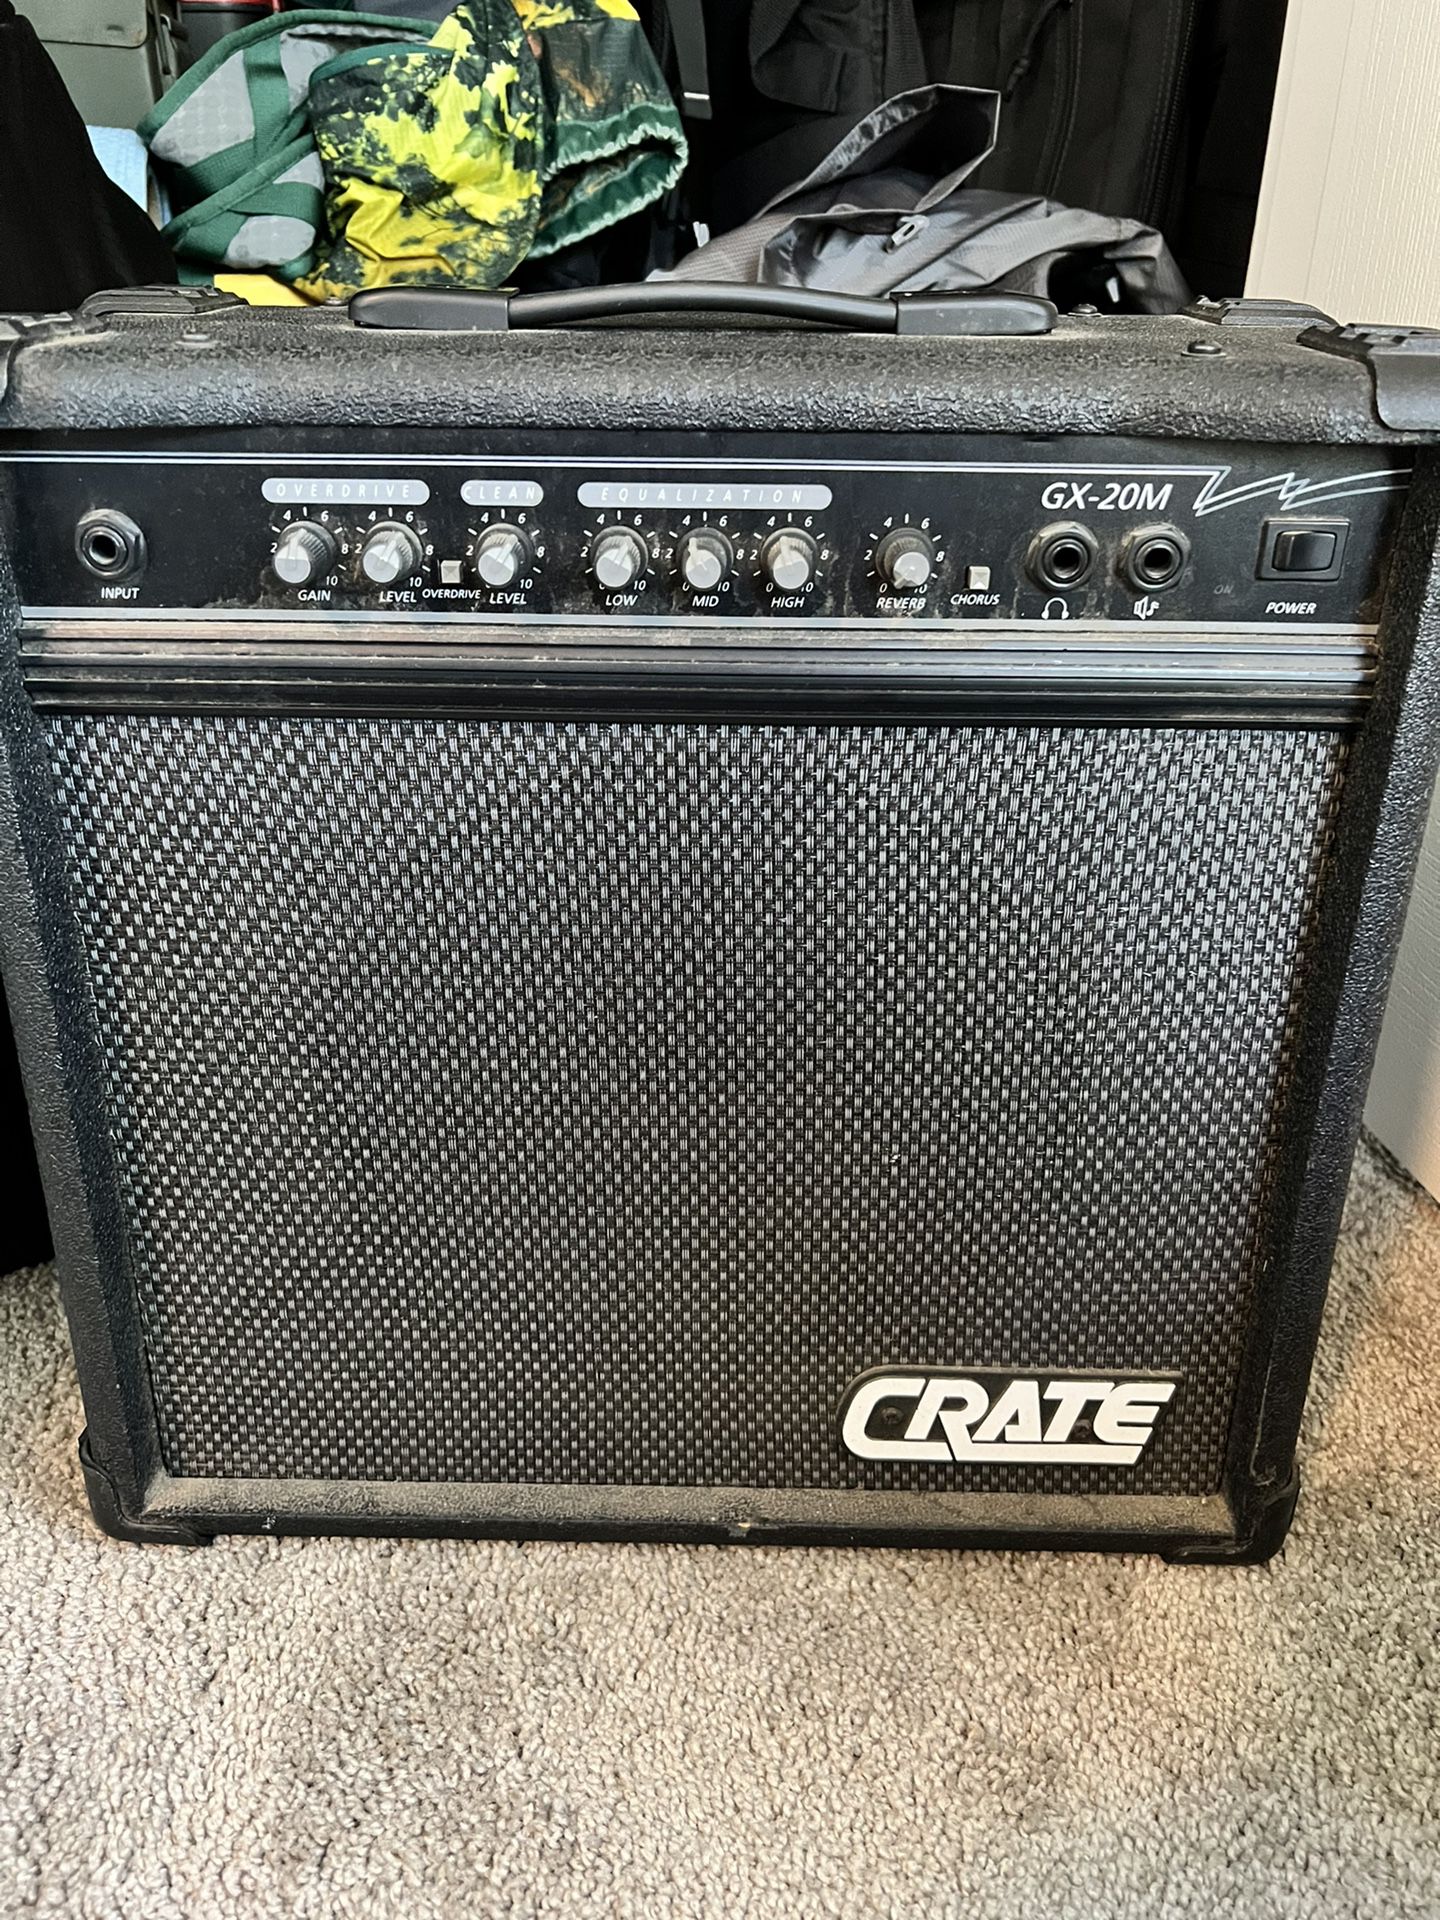 Crate guitar amp